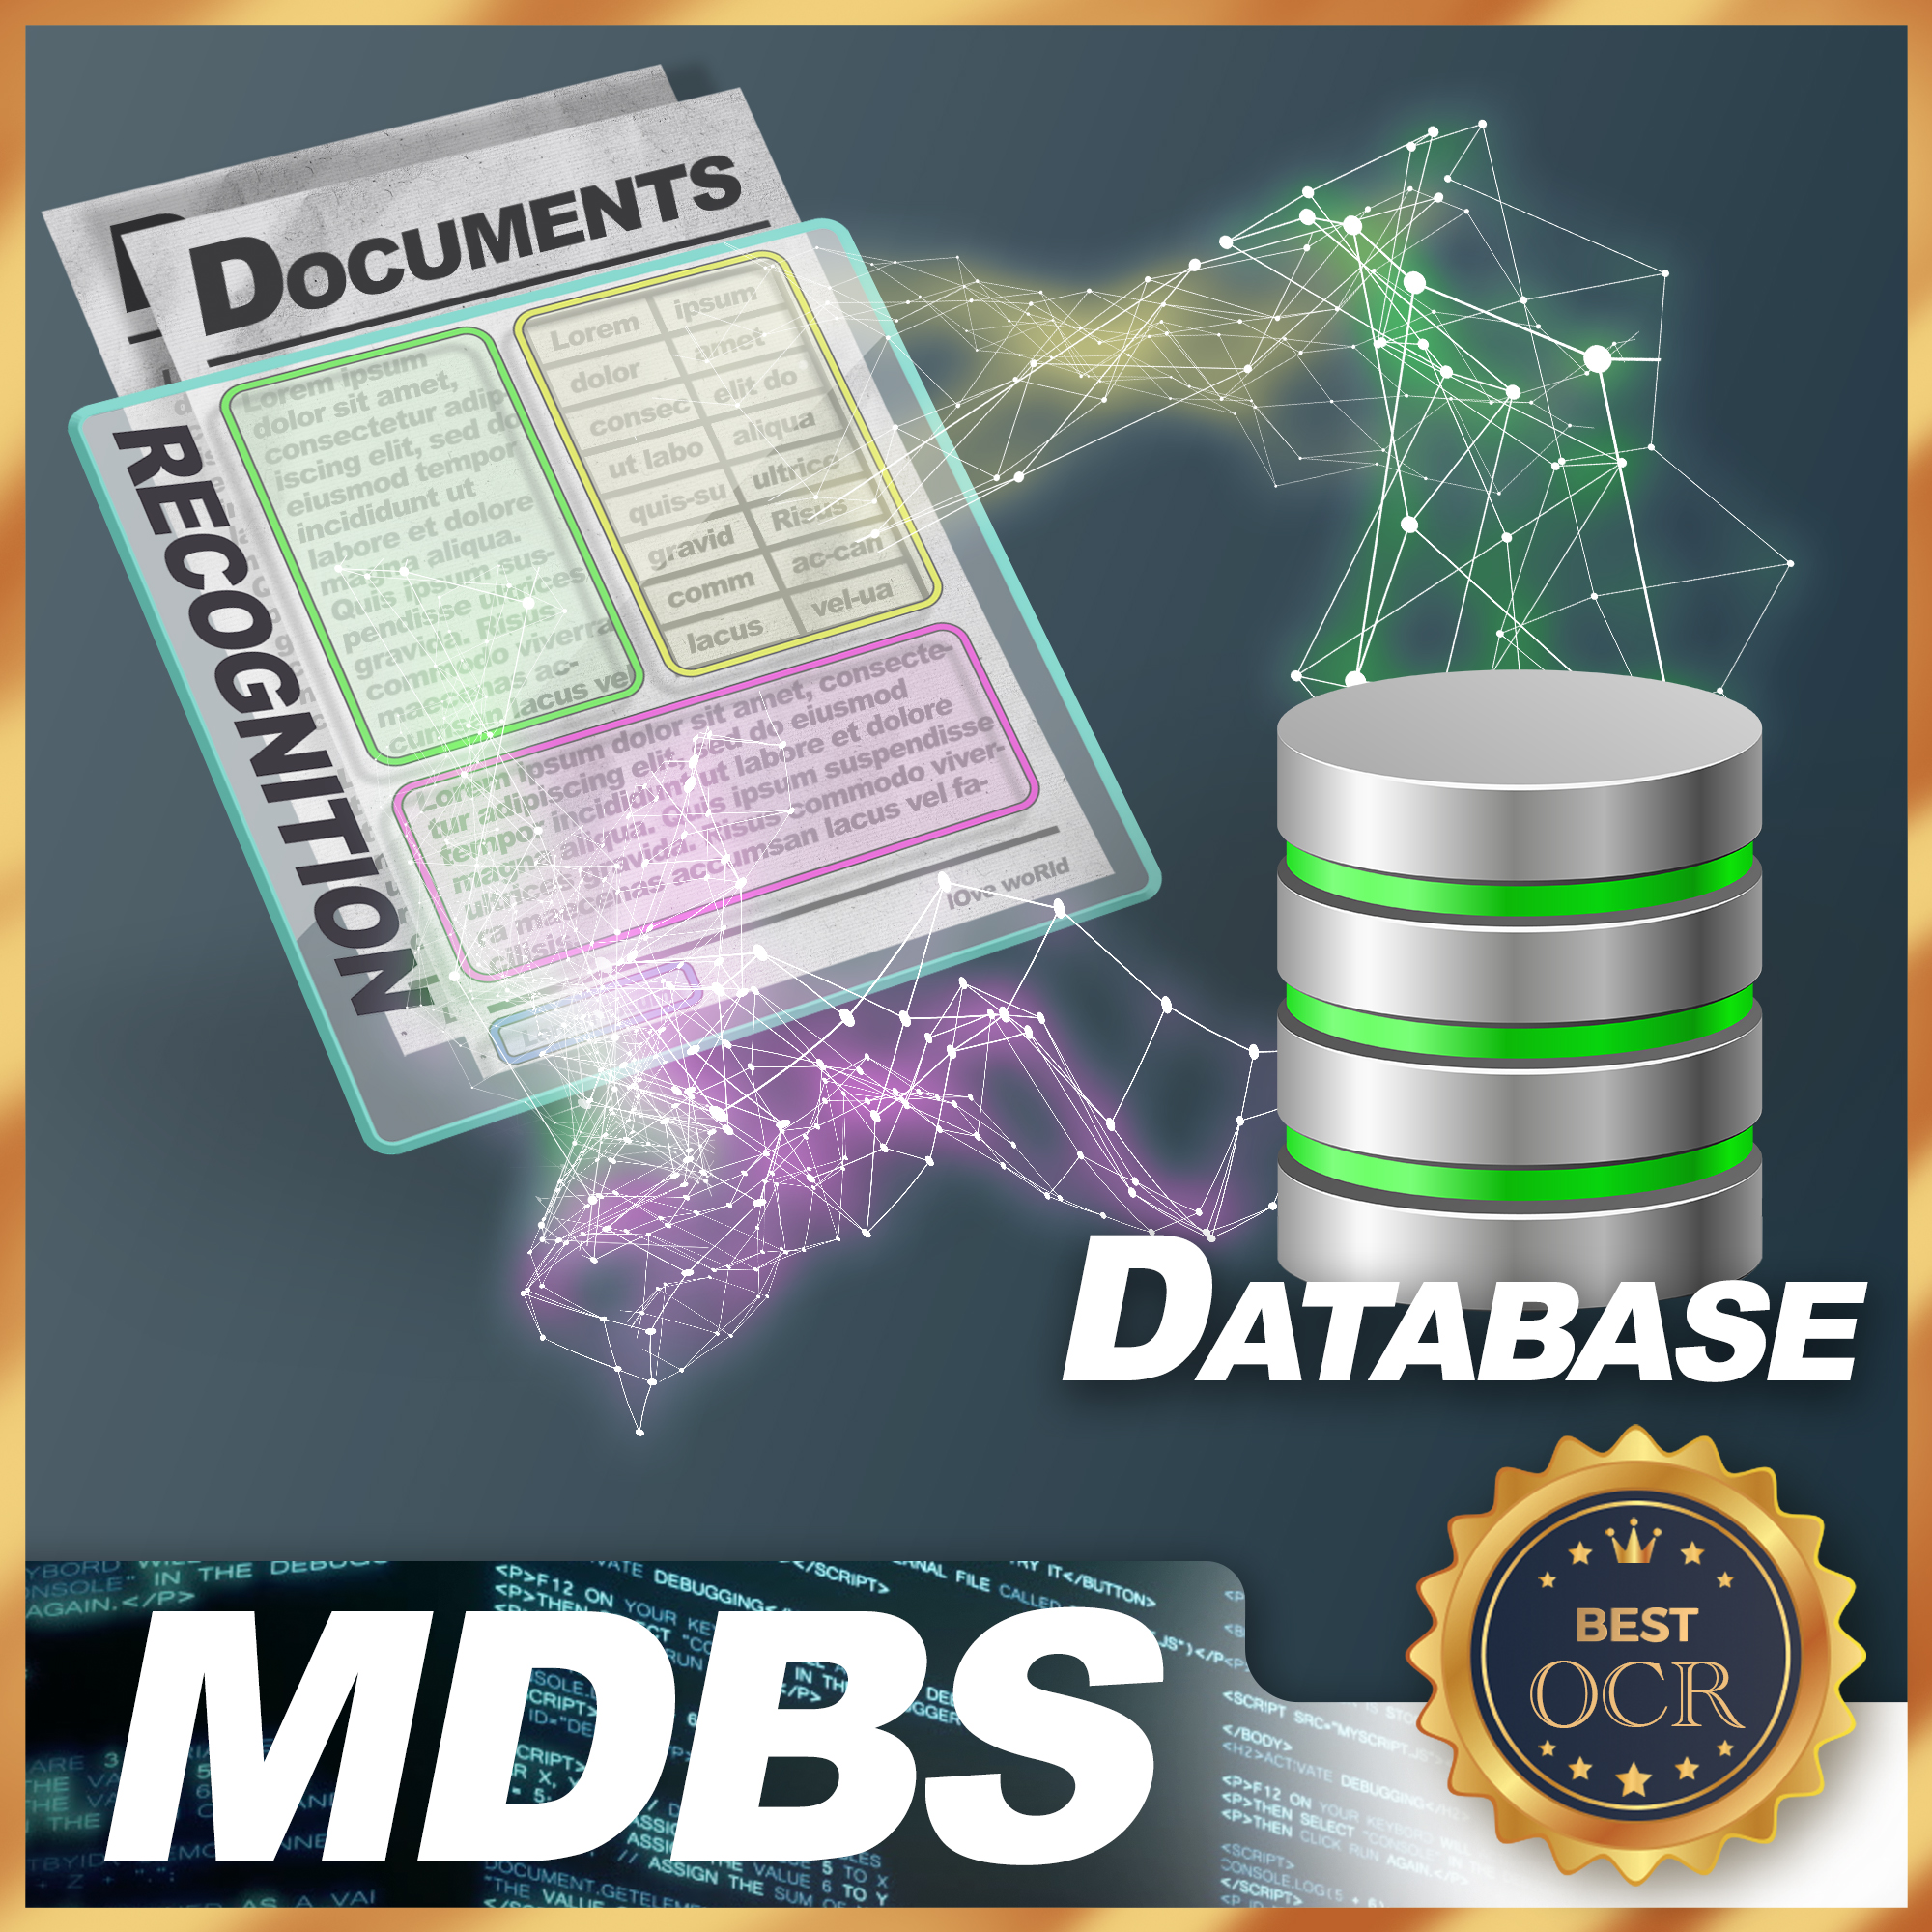 MDBS (Master Data Building Solution)